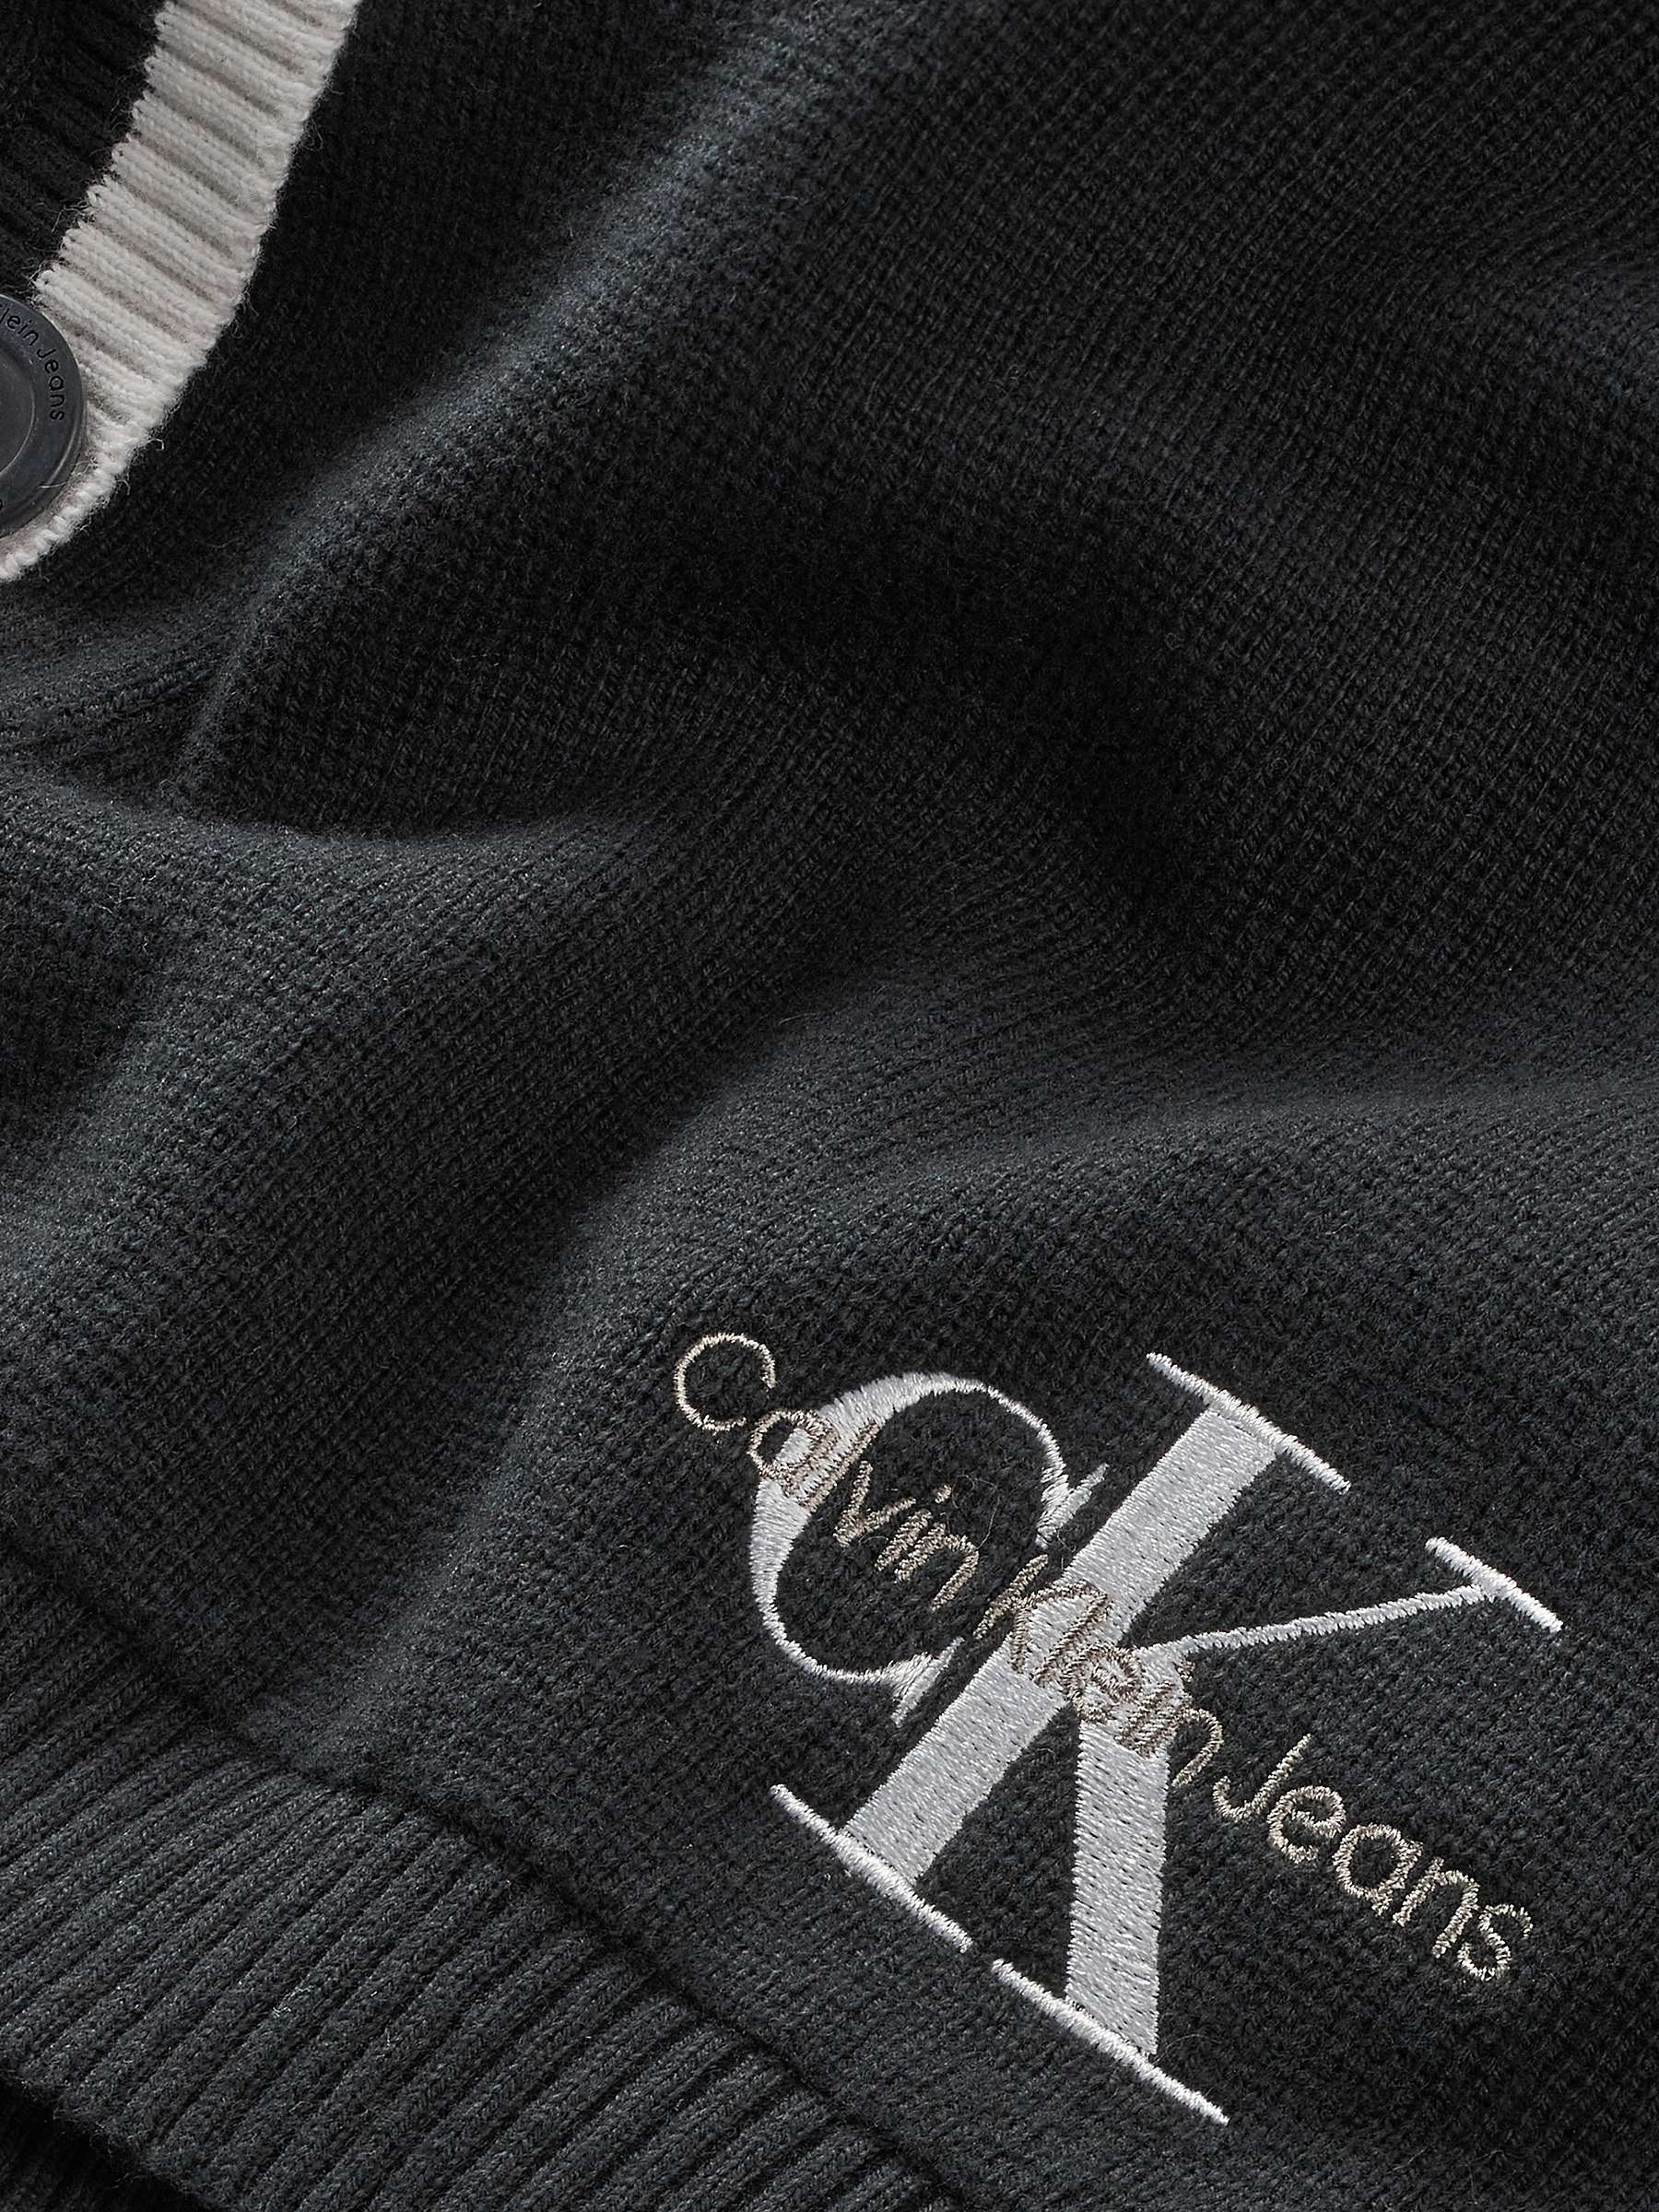 Calvin Klein Kids' Cotton Cardigan, Black at John Lewis & Partners